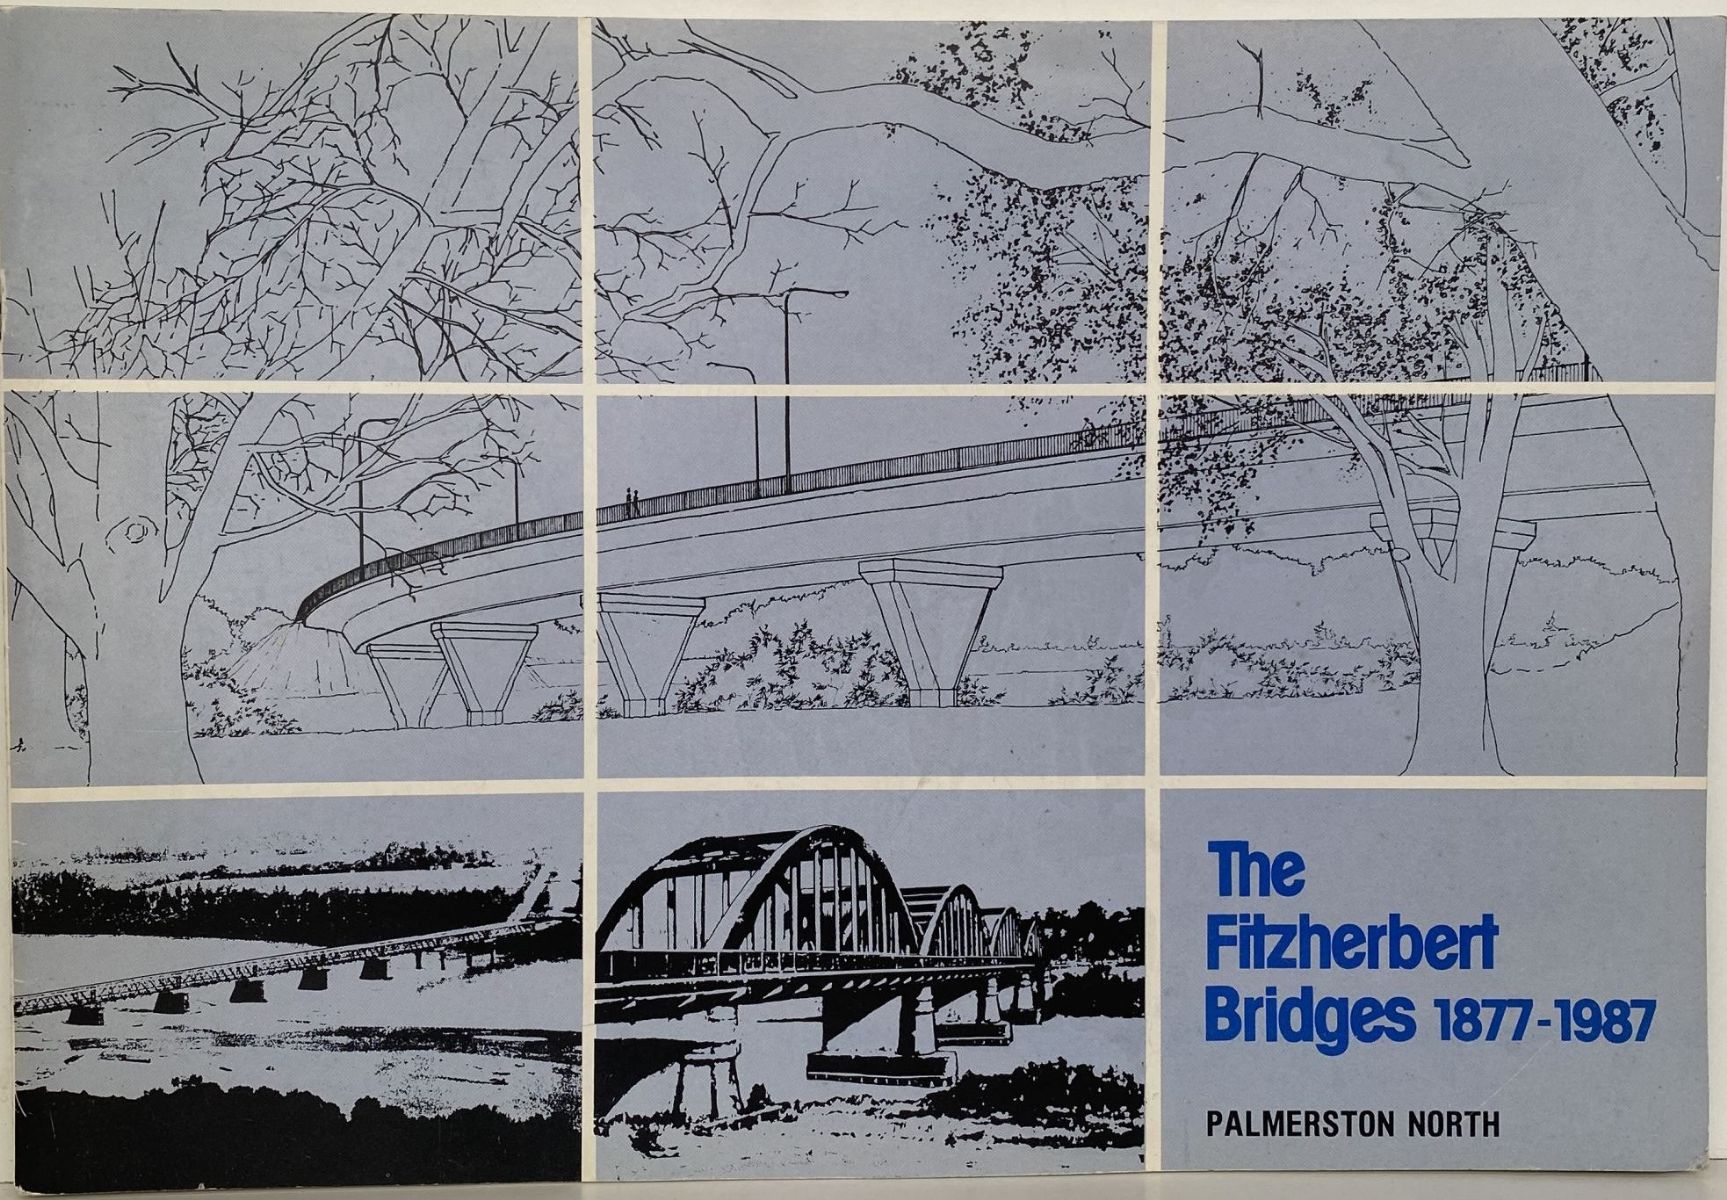 THE FITZHERBERT BRIDGES 1877-1987: Palmerston North